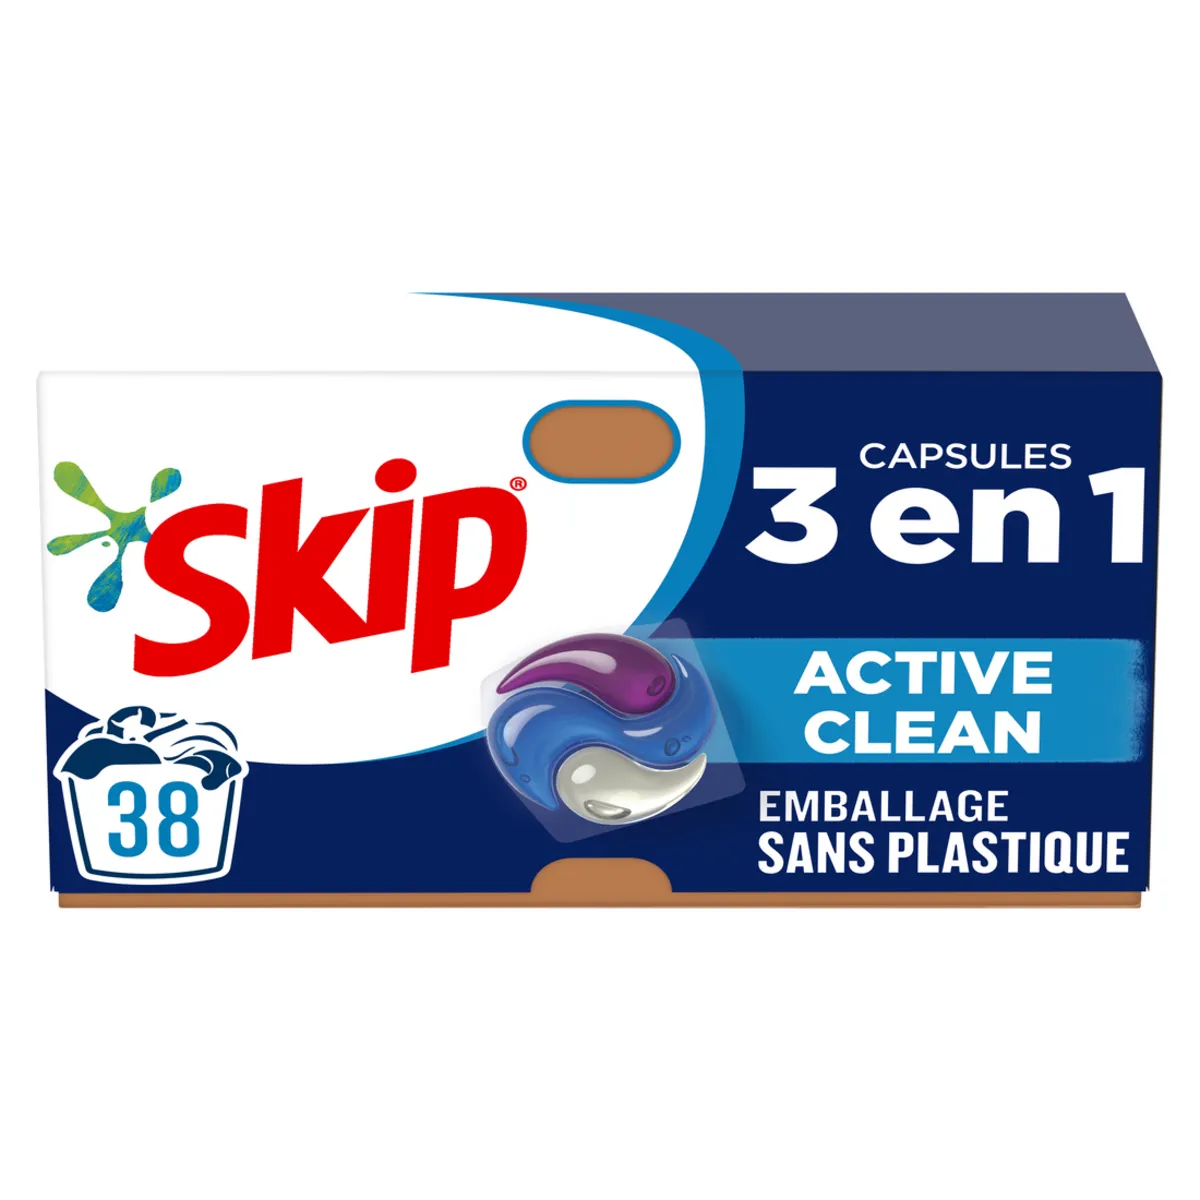 lessive capsule ultimate active clean 3 en 1 skip(1)